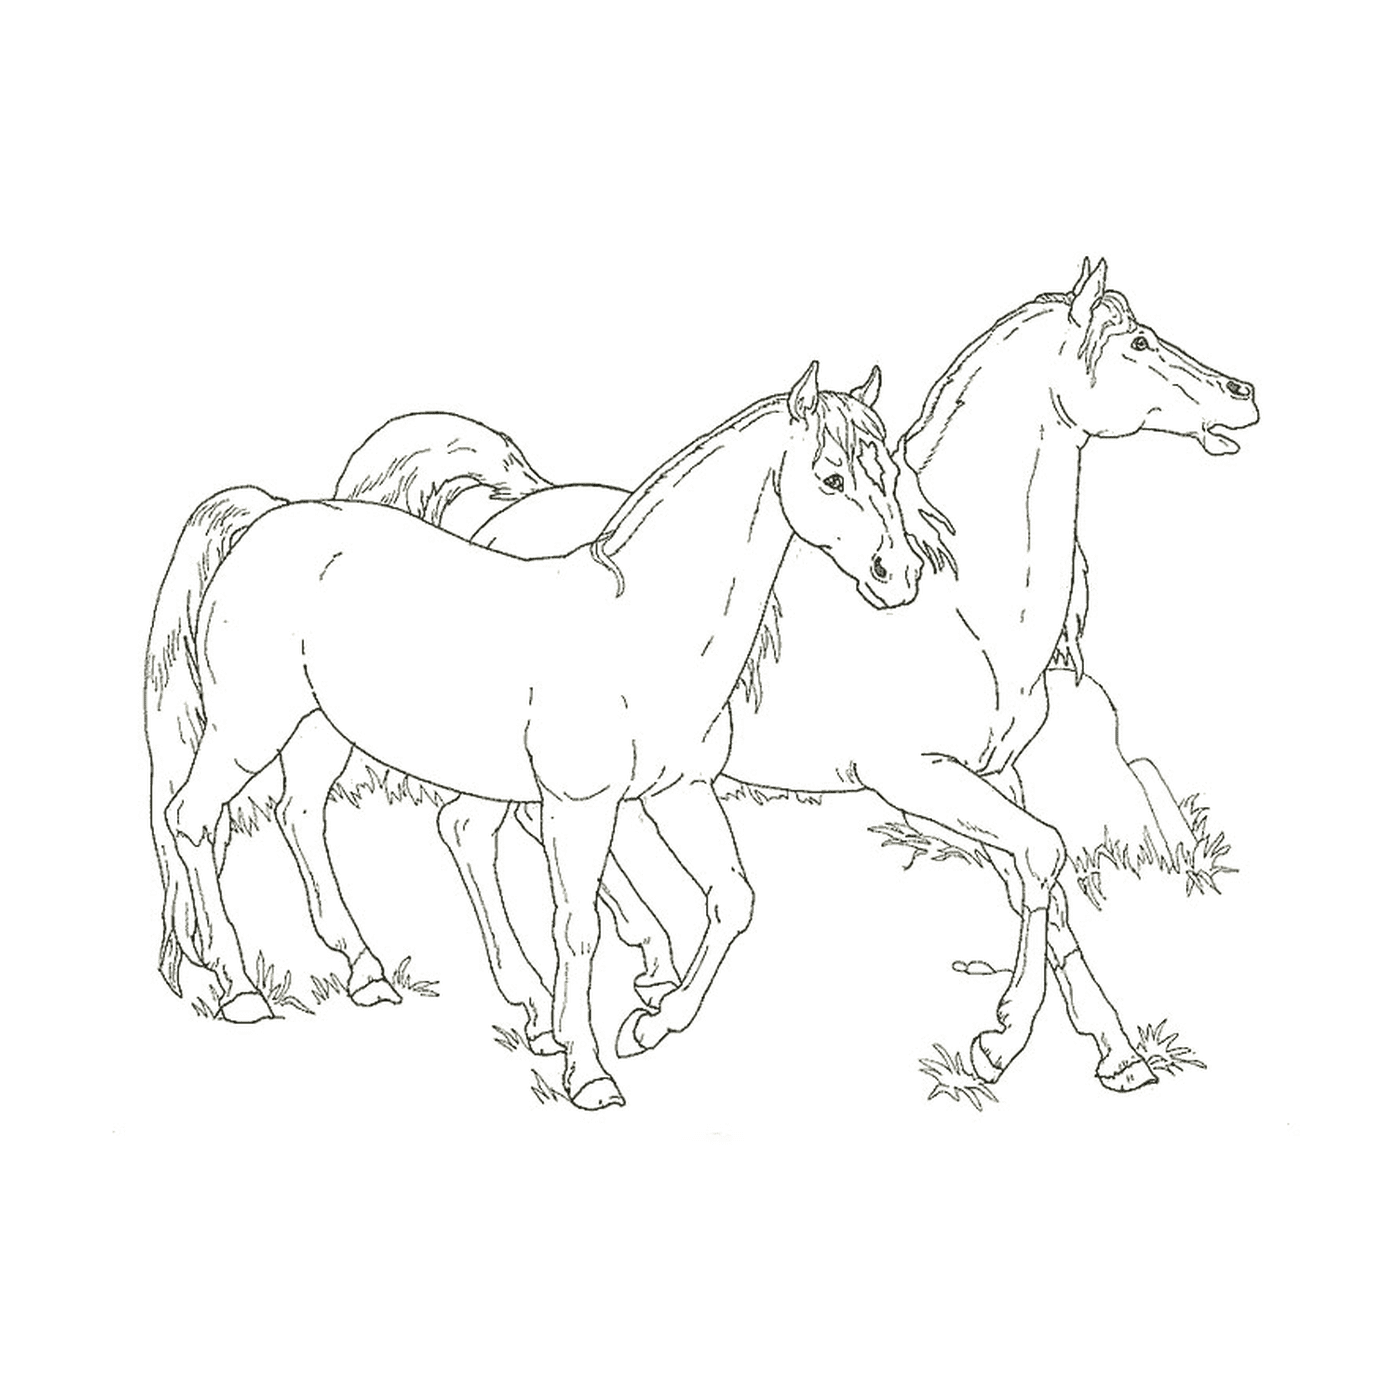  Конь и жеребец - две лошади, стоящие бок о бок 